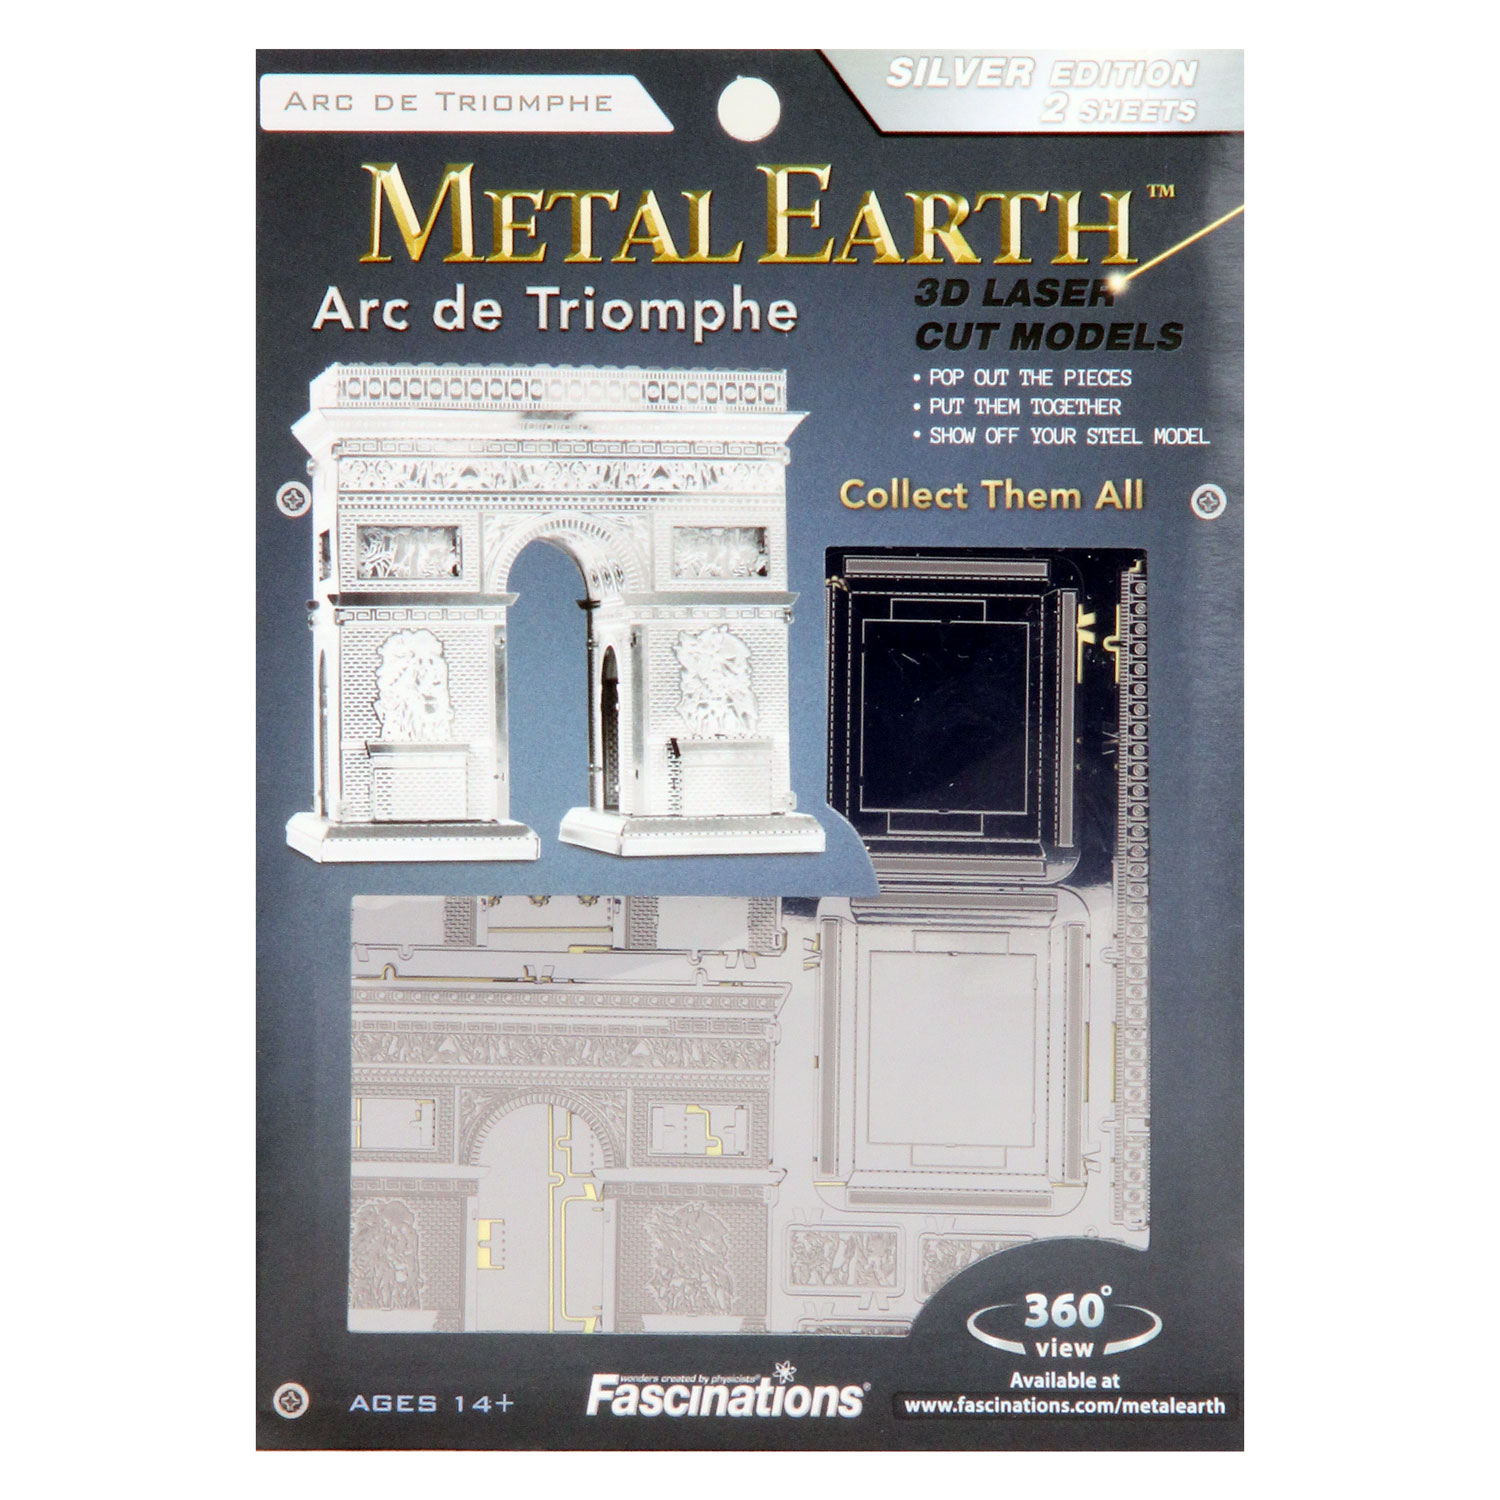 Metal Earth Arc de Triomphe Zilver Editie